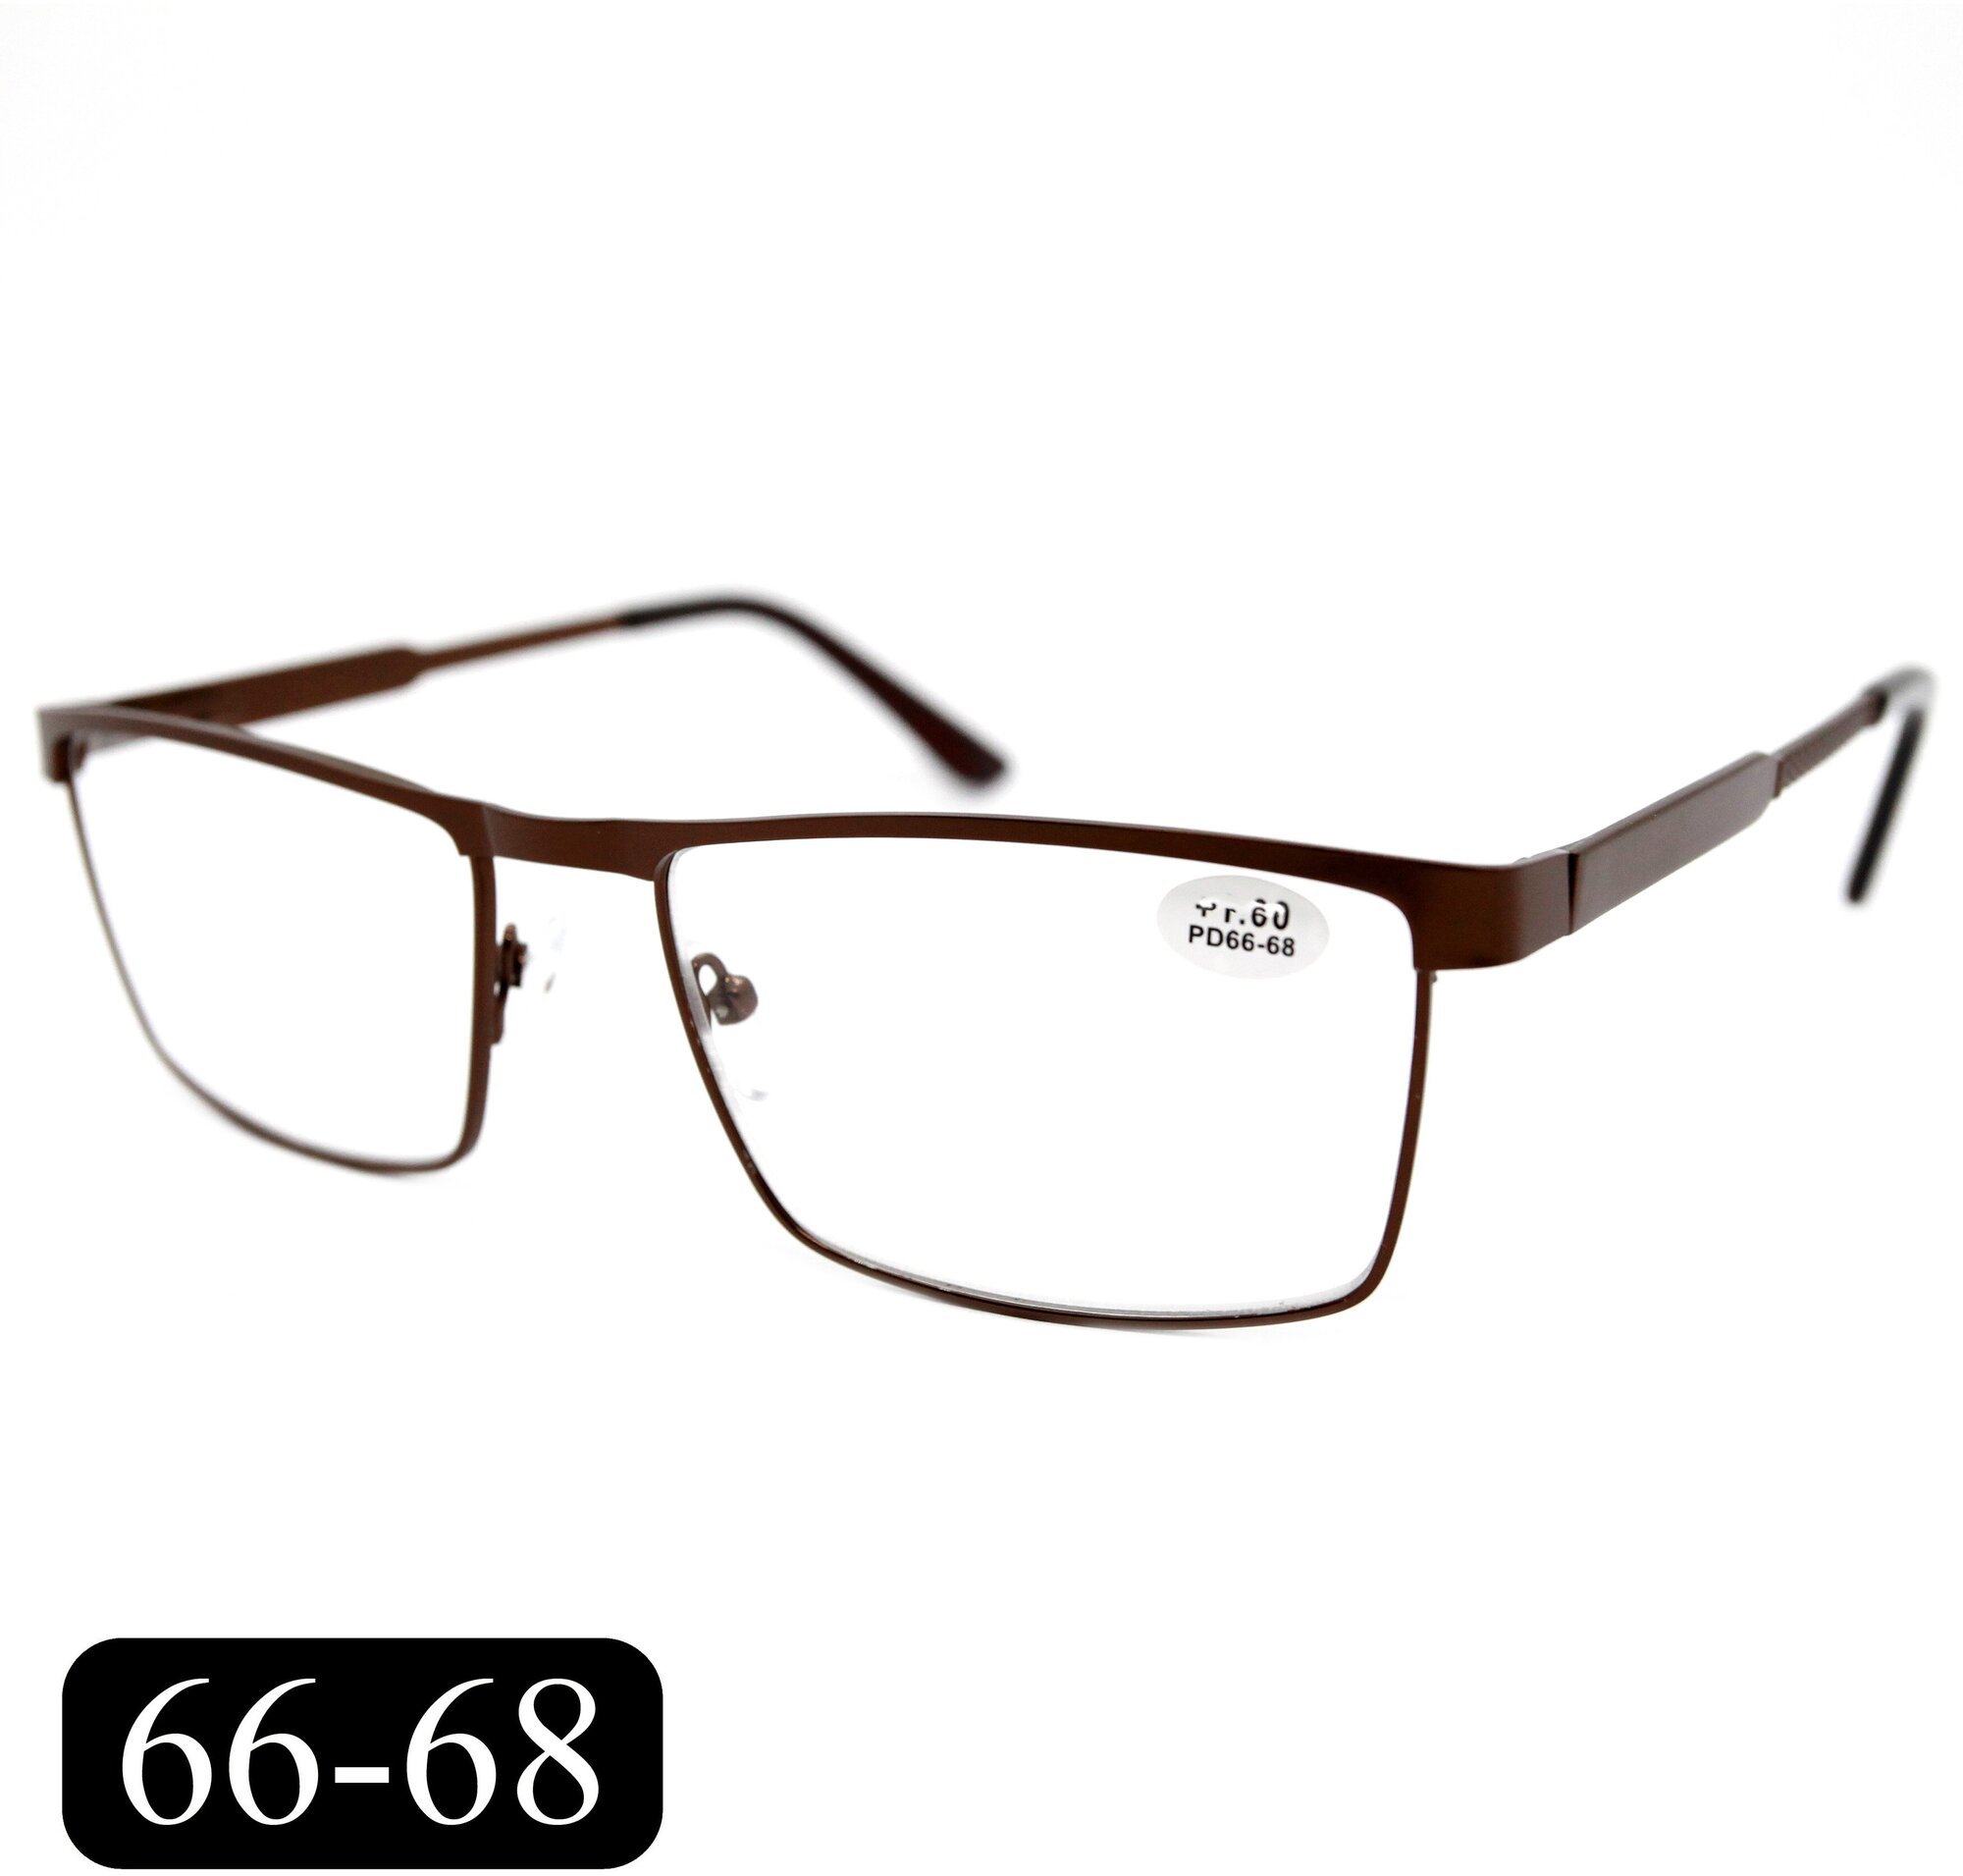 Готовые очки на крупное лицо РЦ 66-68 (+2.00) мост 342 M1 без футляра цвет коричневый линзы пластик РЦ 66-68